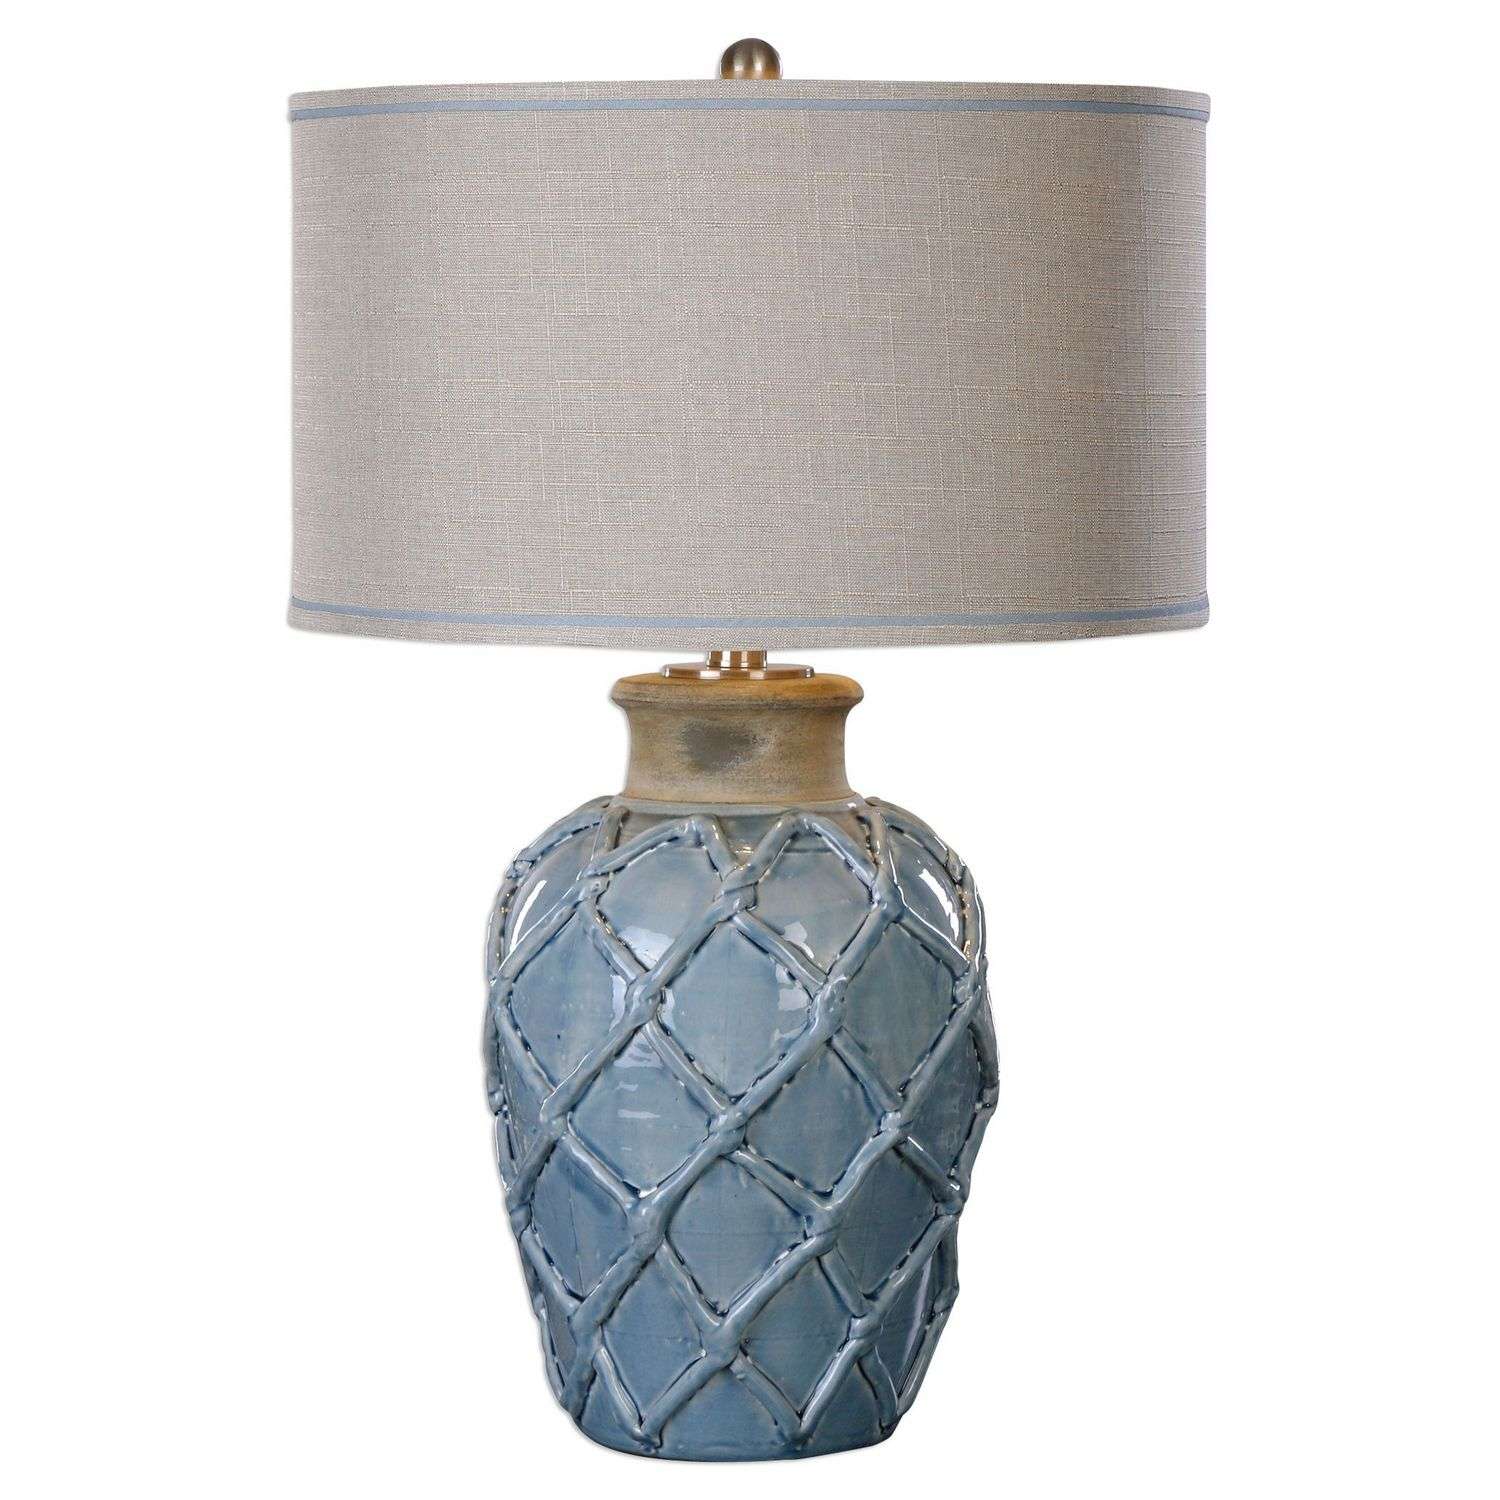 Uttermost Parterre Table Lamp - Pale Blue